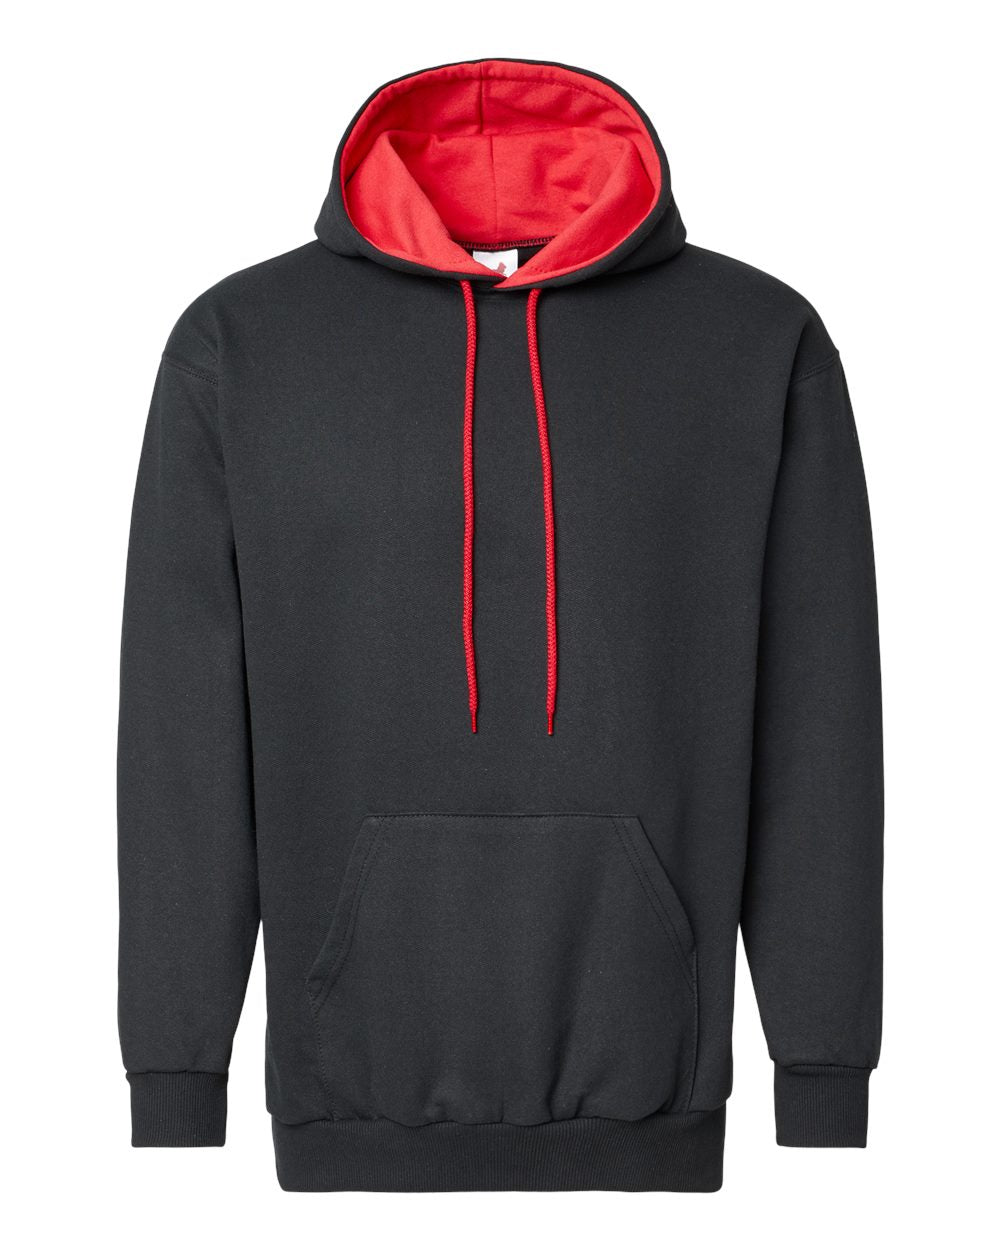 King Fashion Two-Tone Hooded Sweatshirt KF9041 #color_Black/ Red